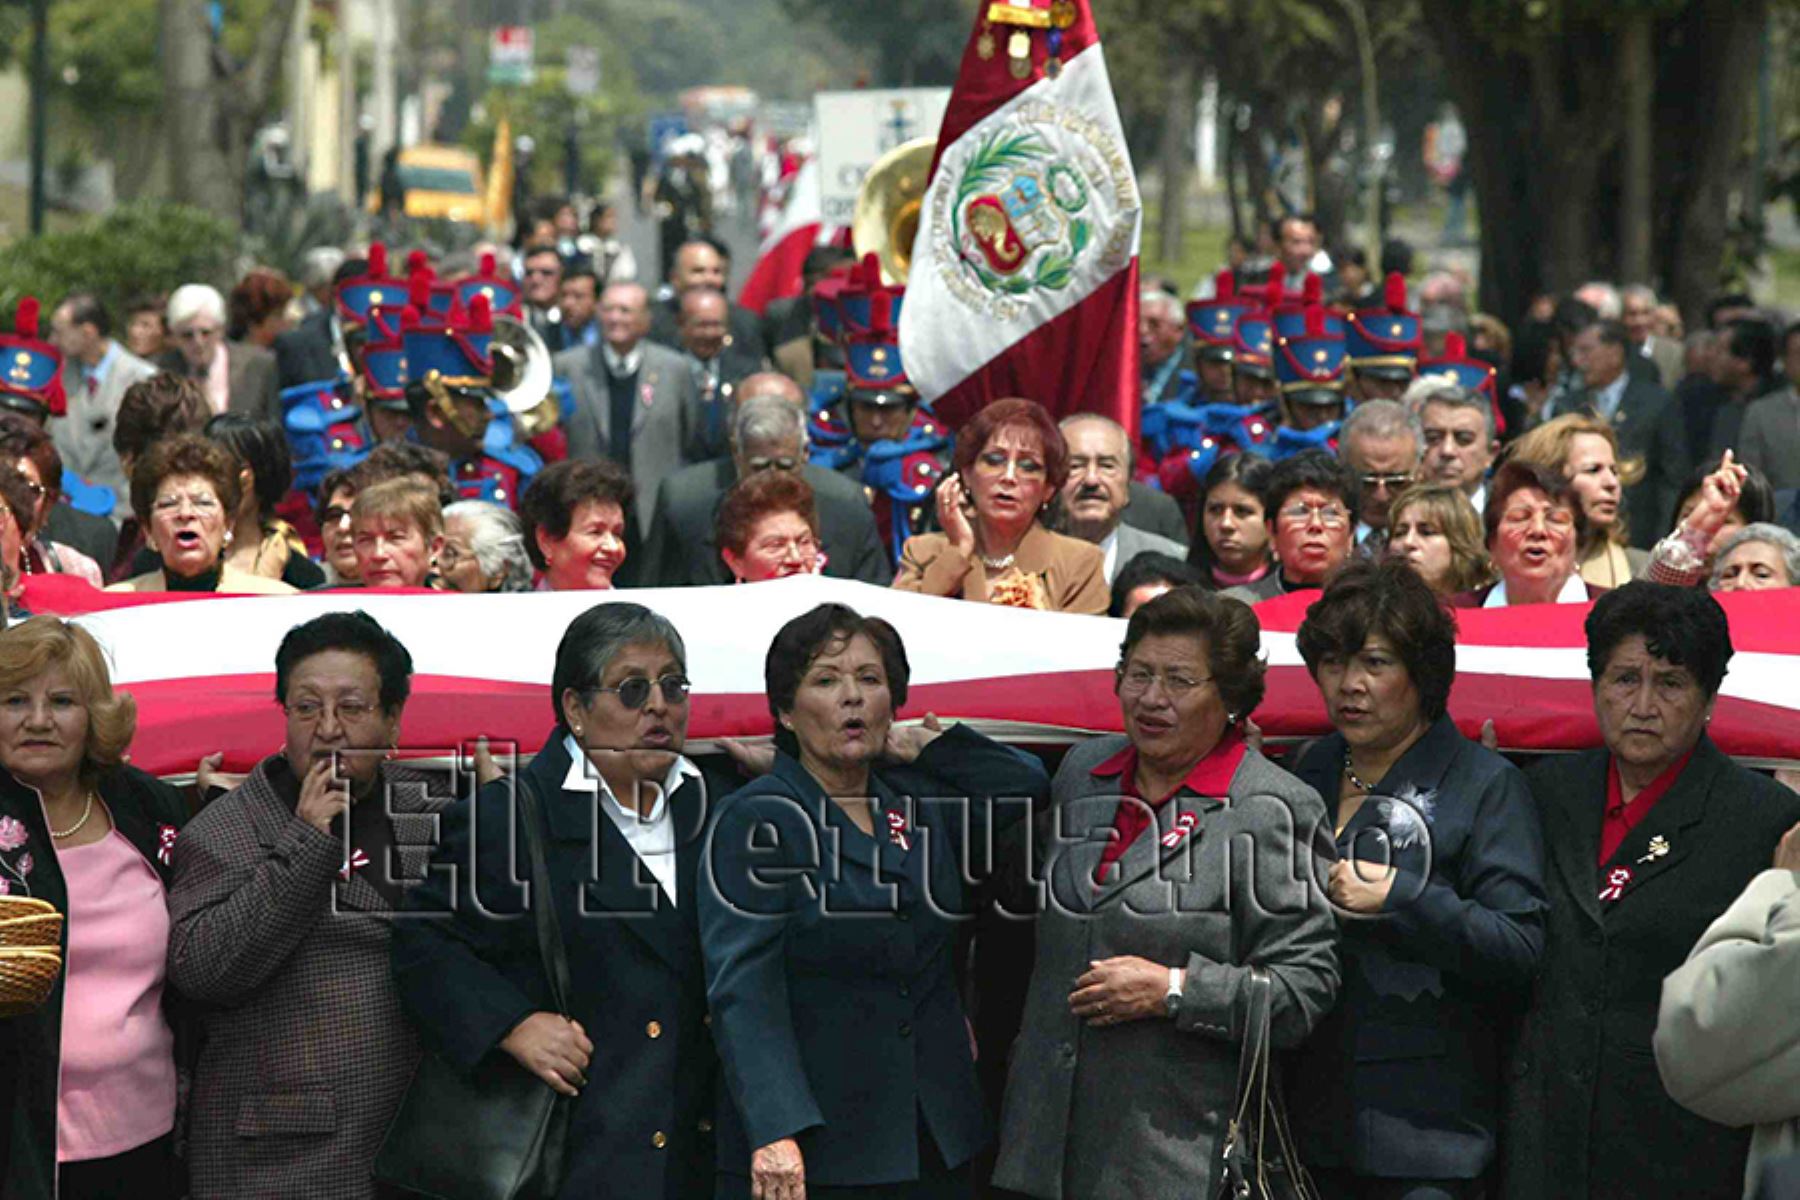 Lima – 28 agosto 2005 / Actos celebratorios por el 76° aniversario de la reincorporación de Tacna a la Patria, organizado por los integrantes del Club Departamental de Tacna en Lima. 
Foto: El Peruano / Víctor Palomino